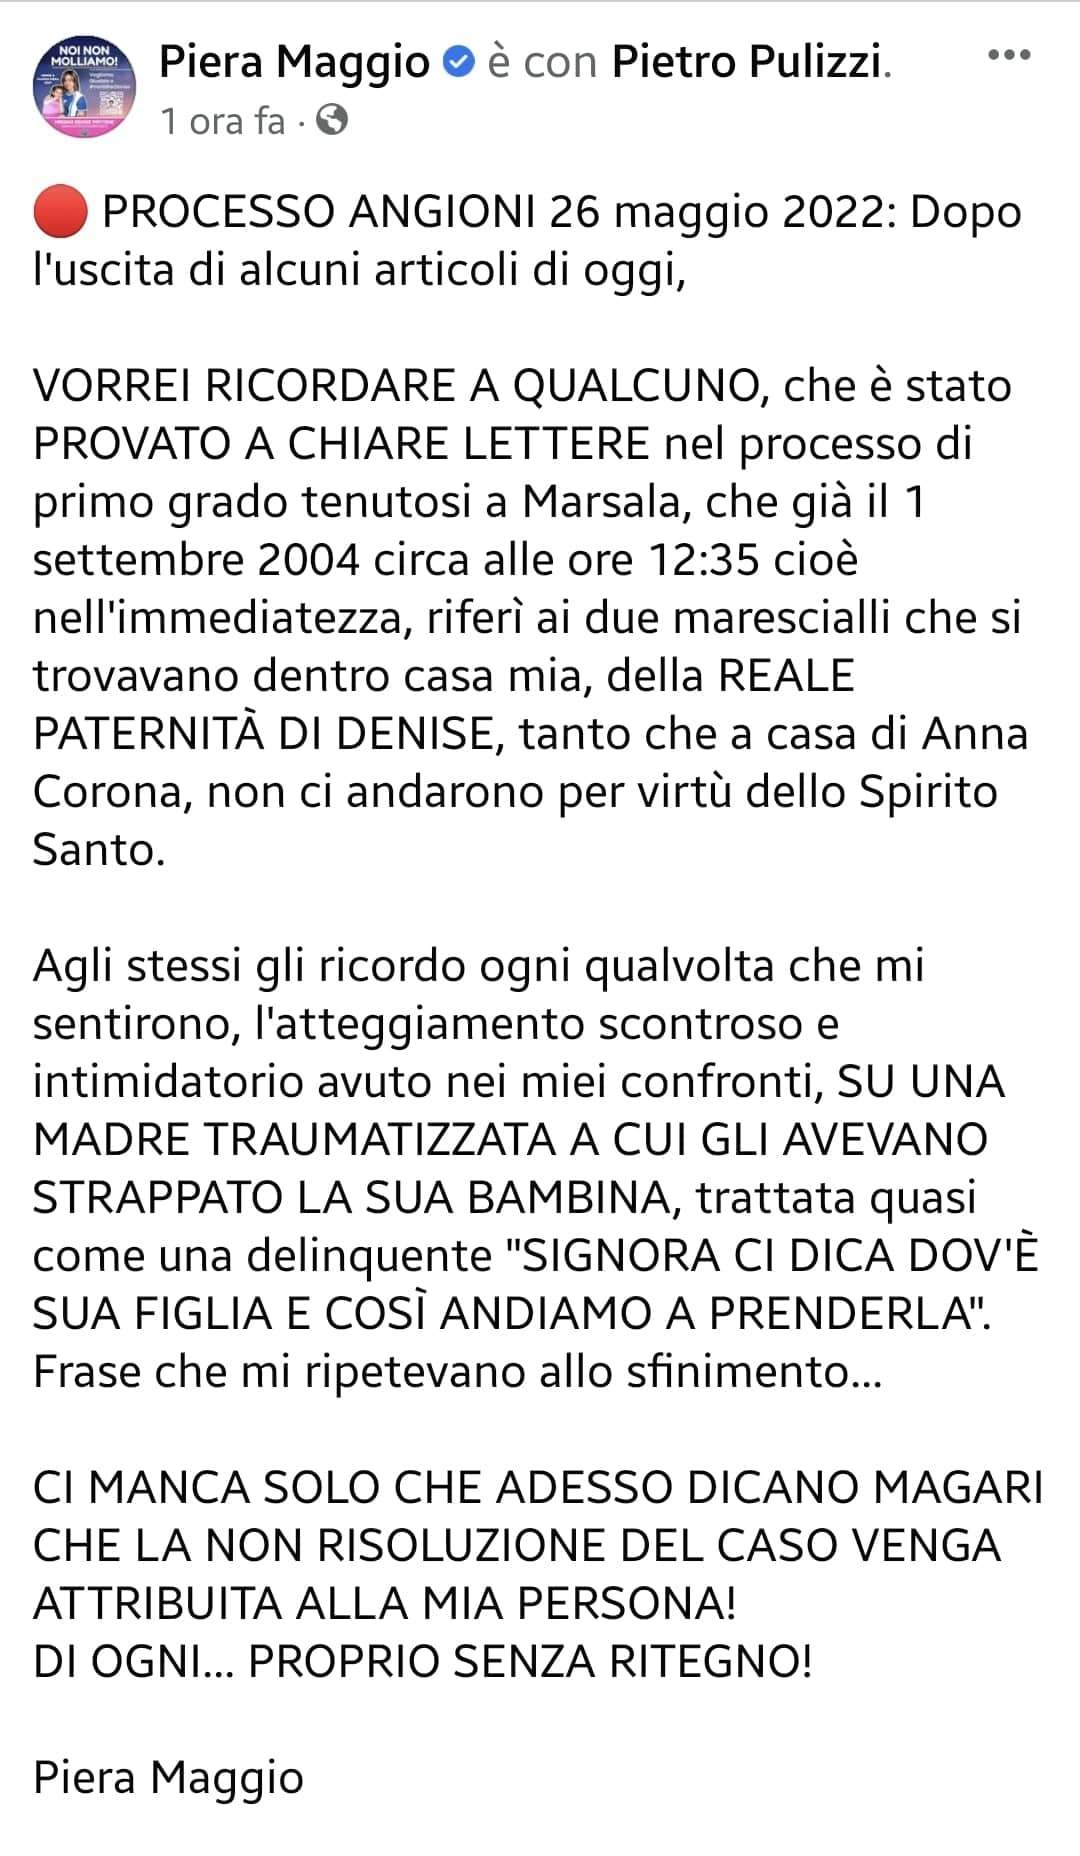 Denise Pipitone: Dichiarazioni immediate di Piera Maggio sulla reale paternità di Denise